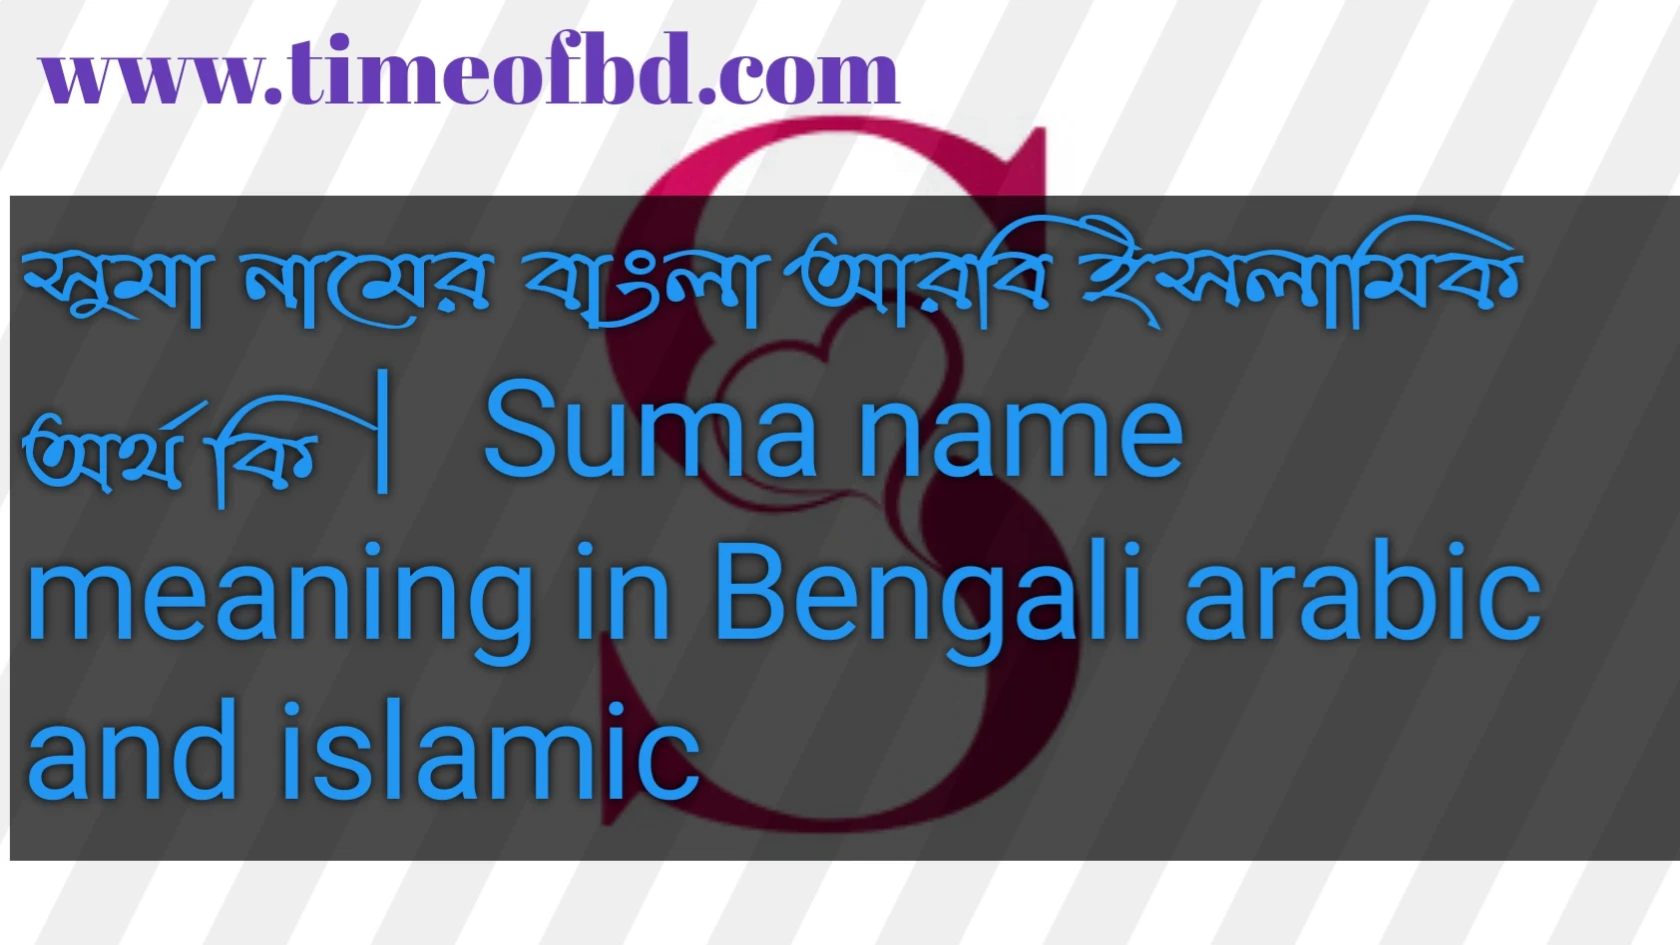 সুমা নামের অর্থ কি, সুমা নামের বাংলা অর্থ কি, সুমা নামের ইসলামিক অর্থ কি, Suma name in Bengali, সুমা কি ইসলামিক নাম,